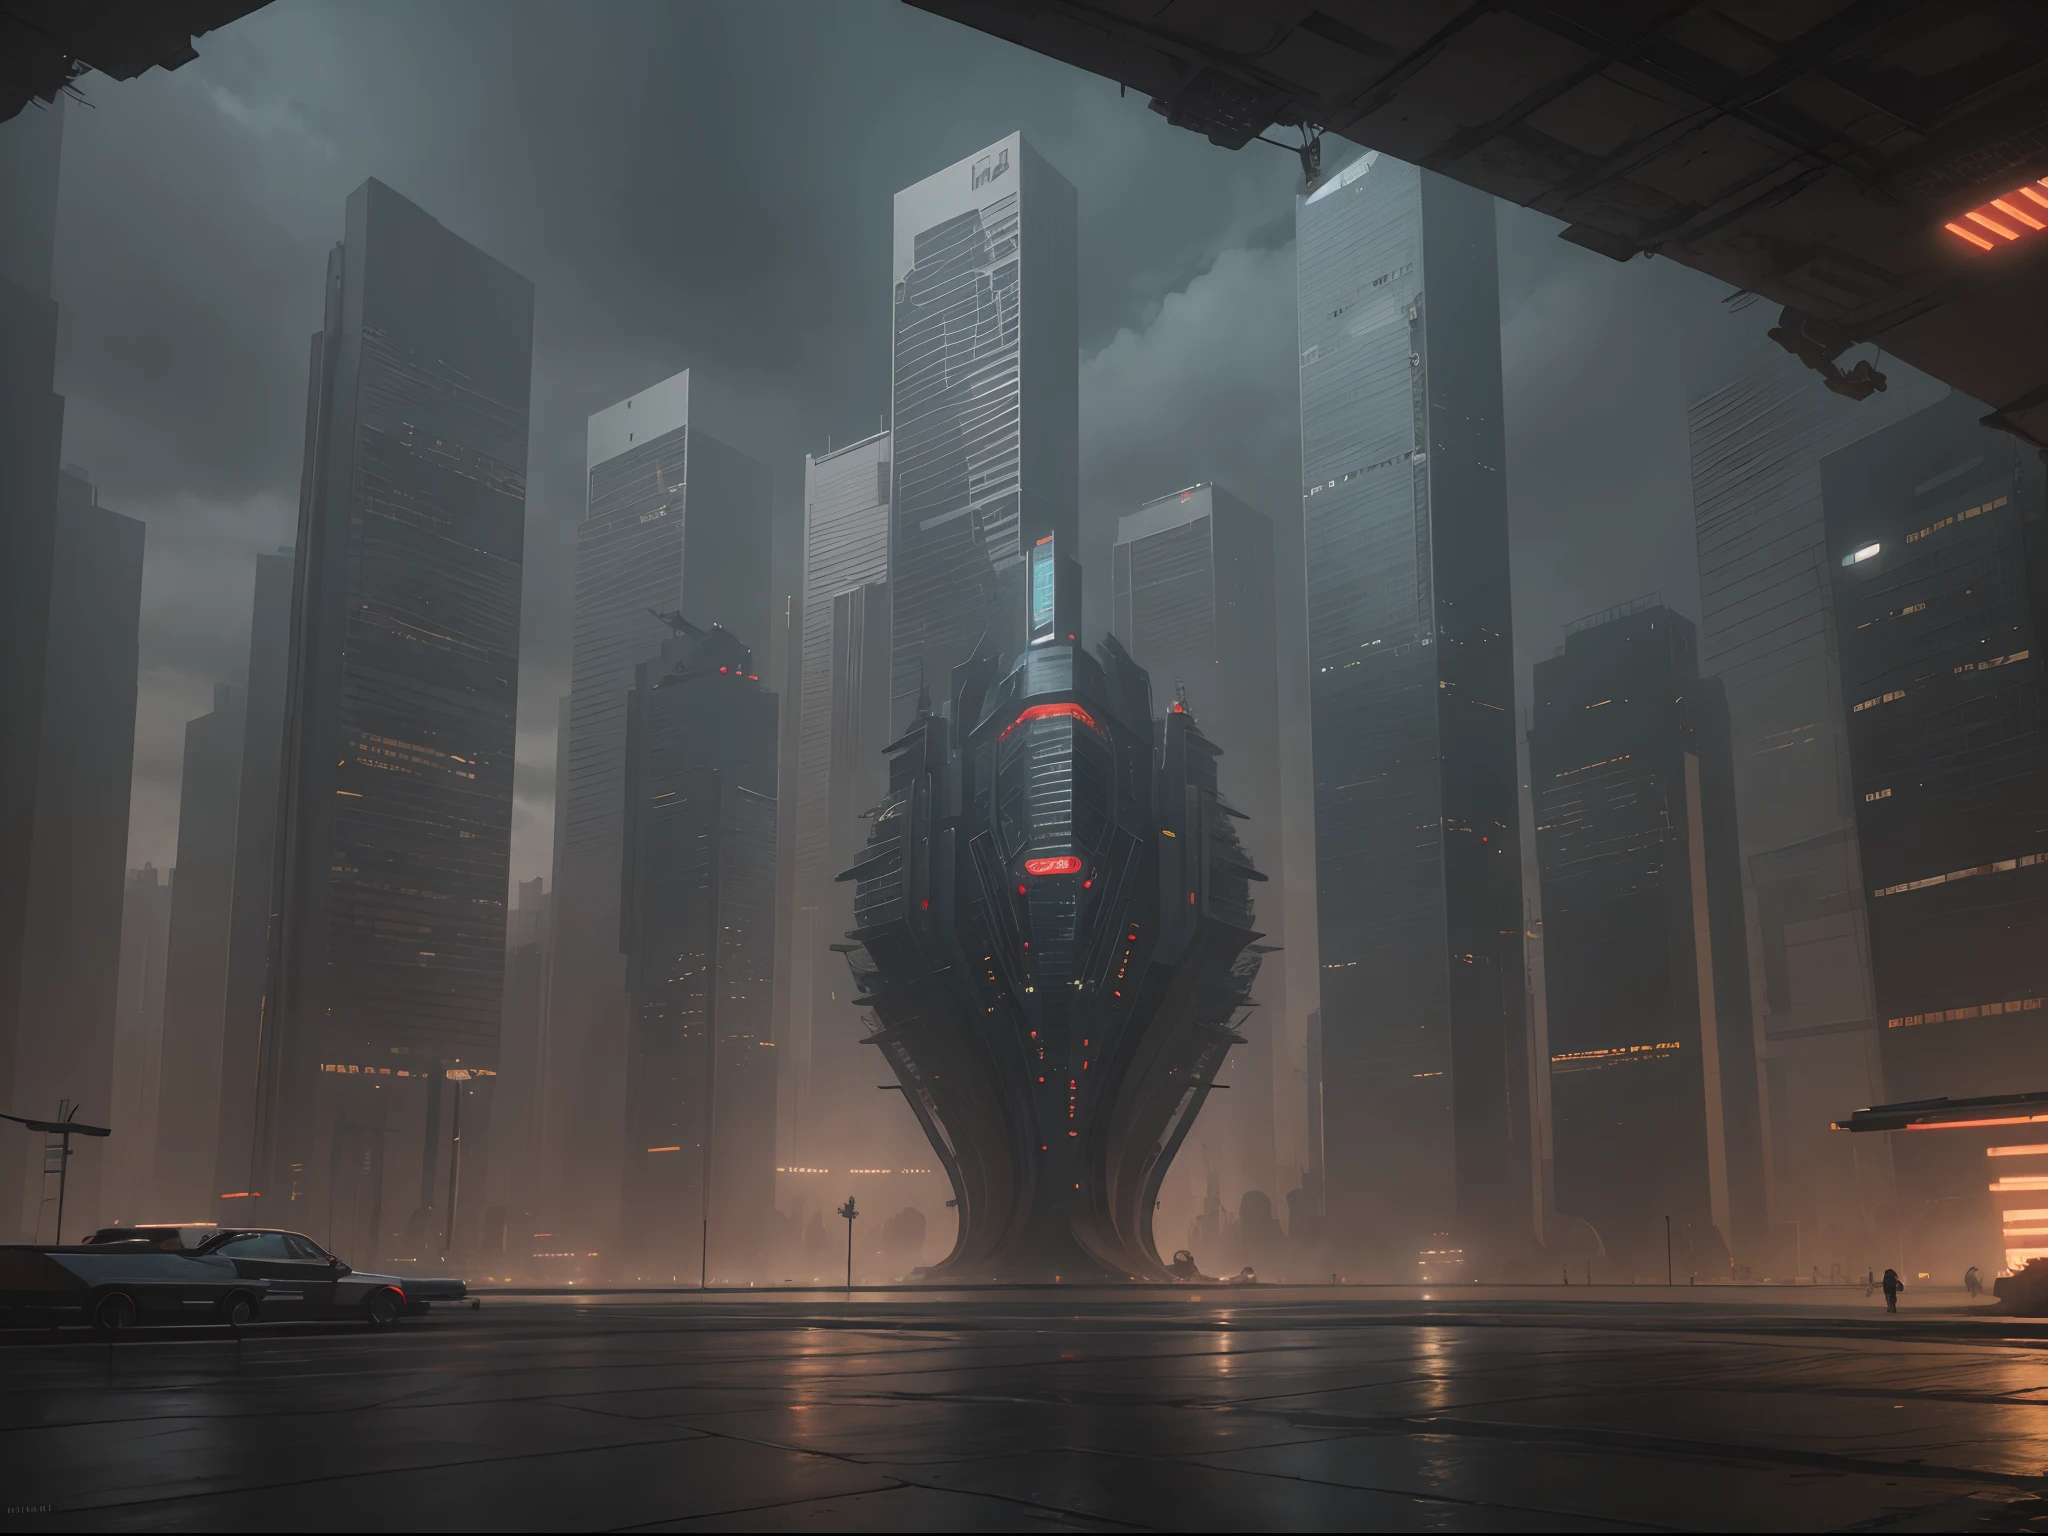 Cyberpunk-Stadtbild mit hoch aufragenden Wolkenkratzern, Leuchtreklamen, und fliegende Autos.